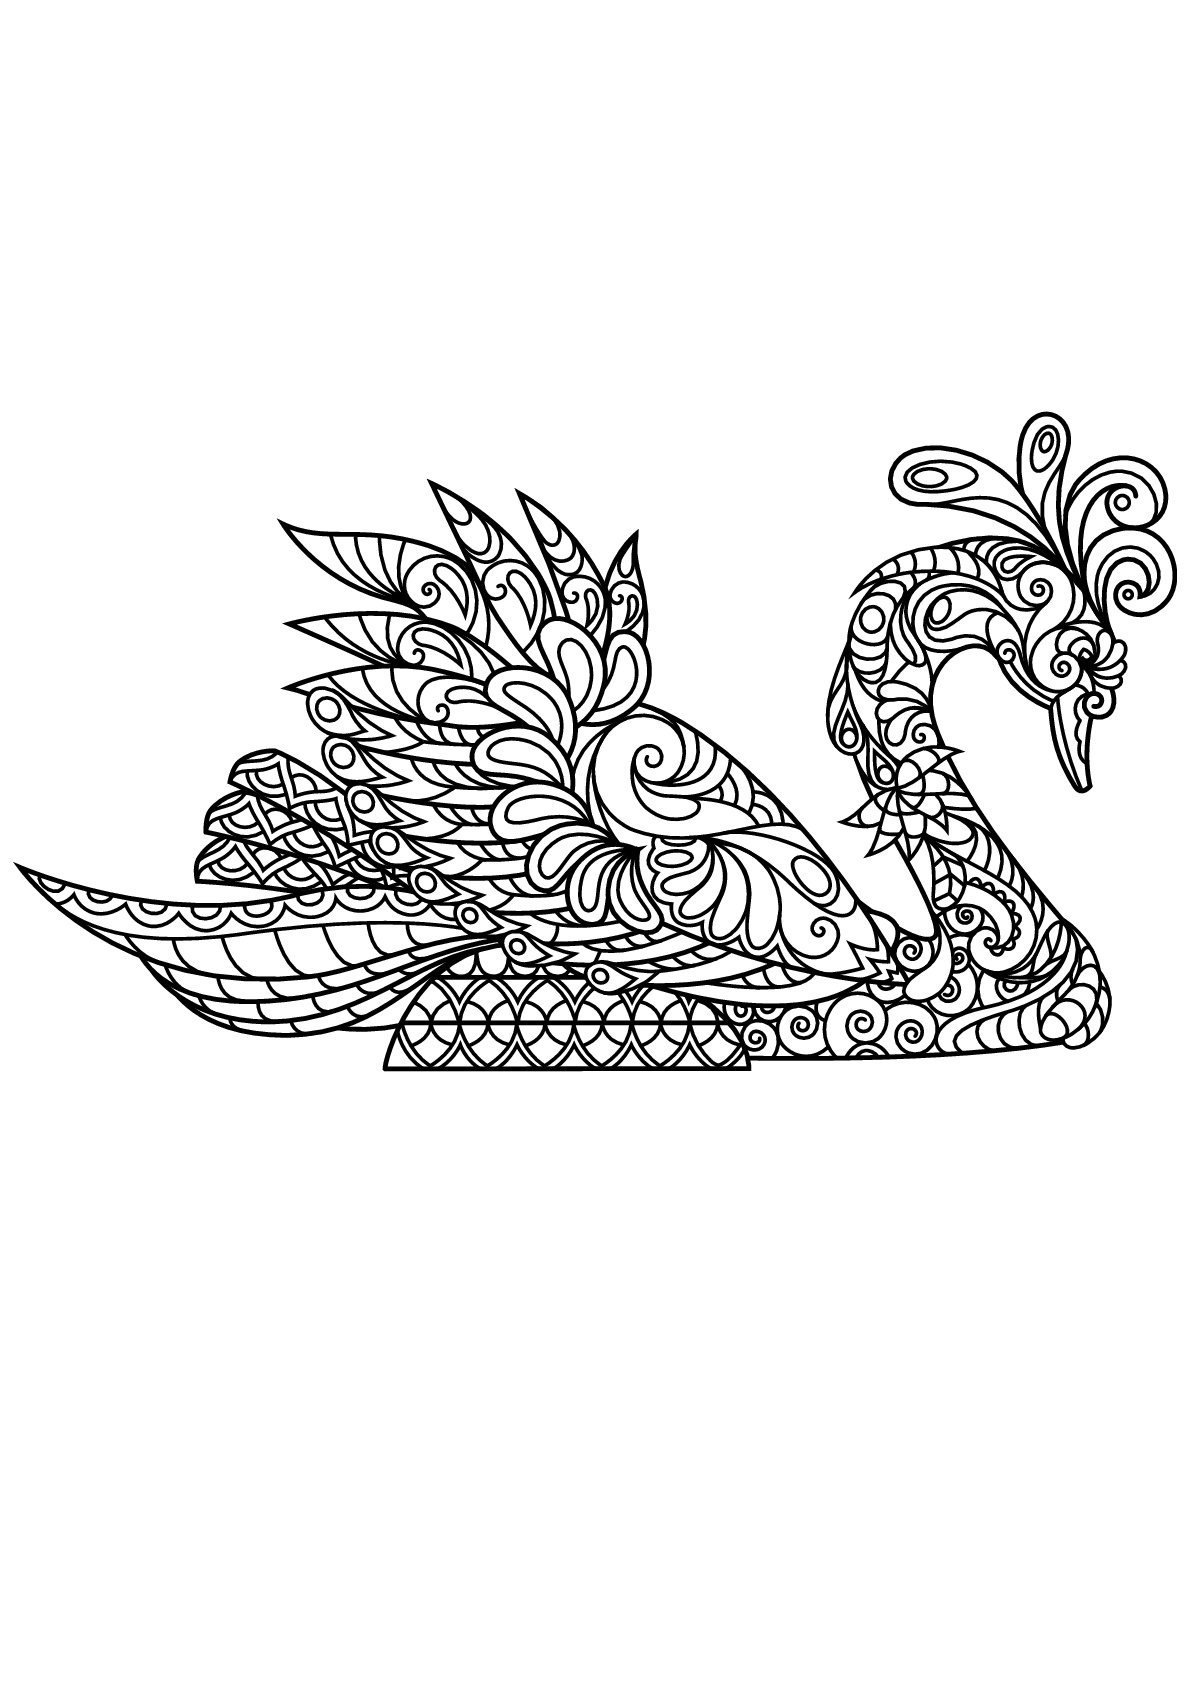 Cisne, con patrones armoniosos y complejos